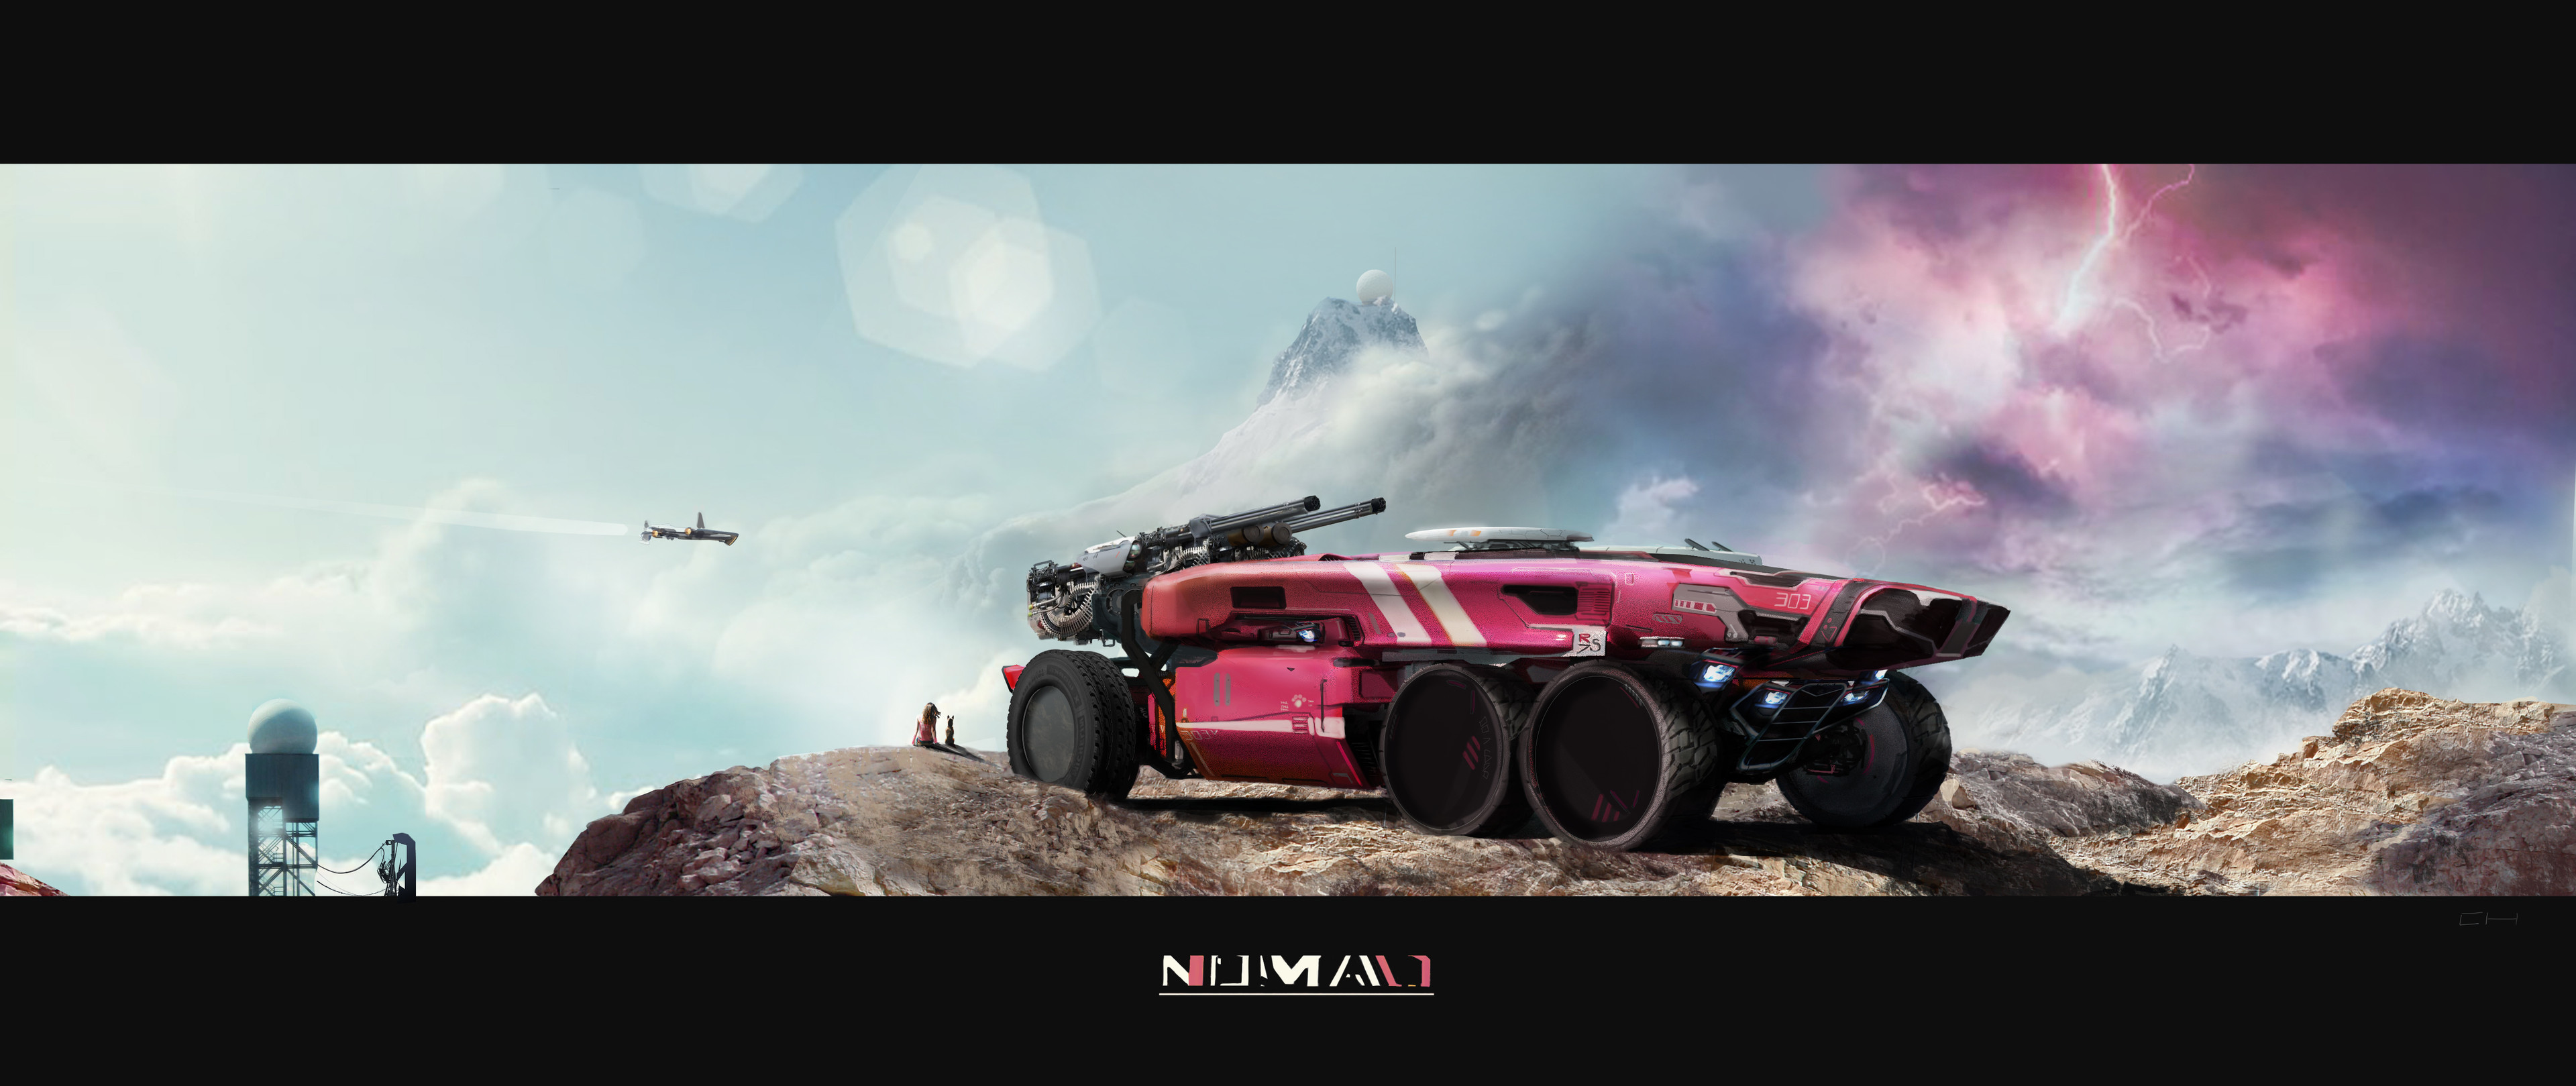 Nomad Striker version.